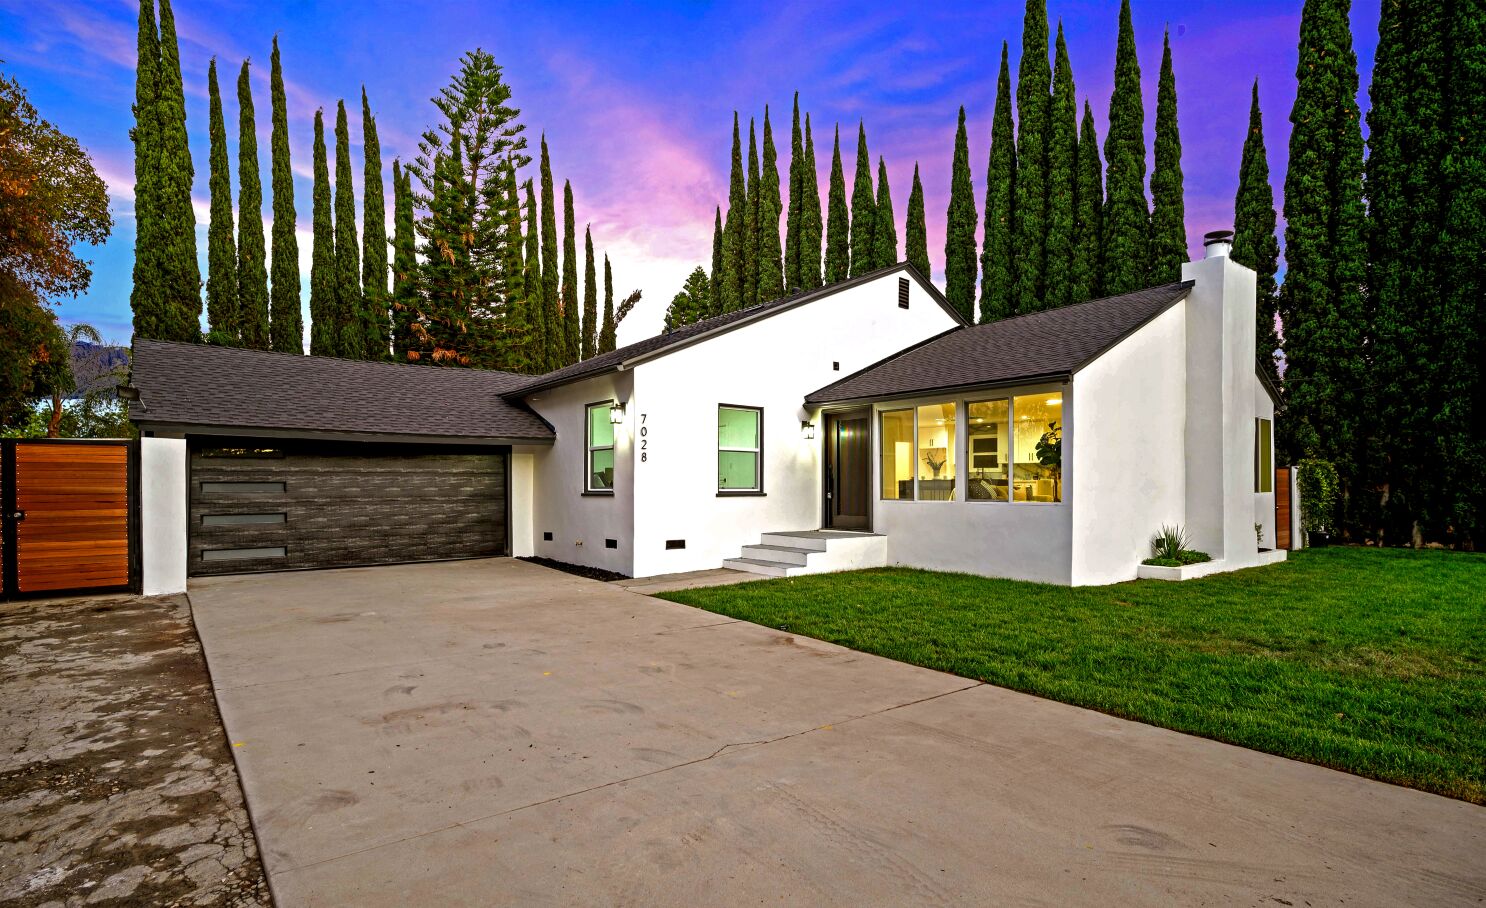 Qué casas se pueden comprar por un millón de dólares en .? He aquí un  vistazo - Los Angeles Times